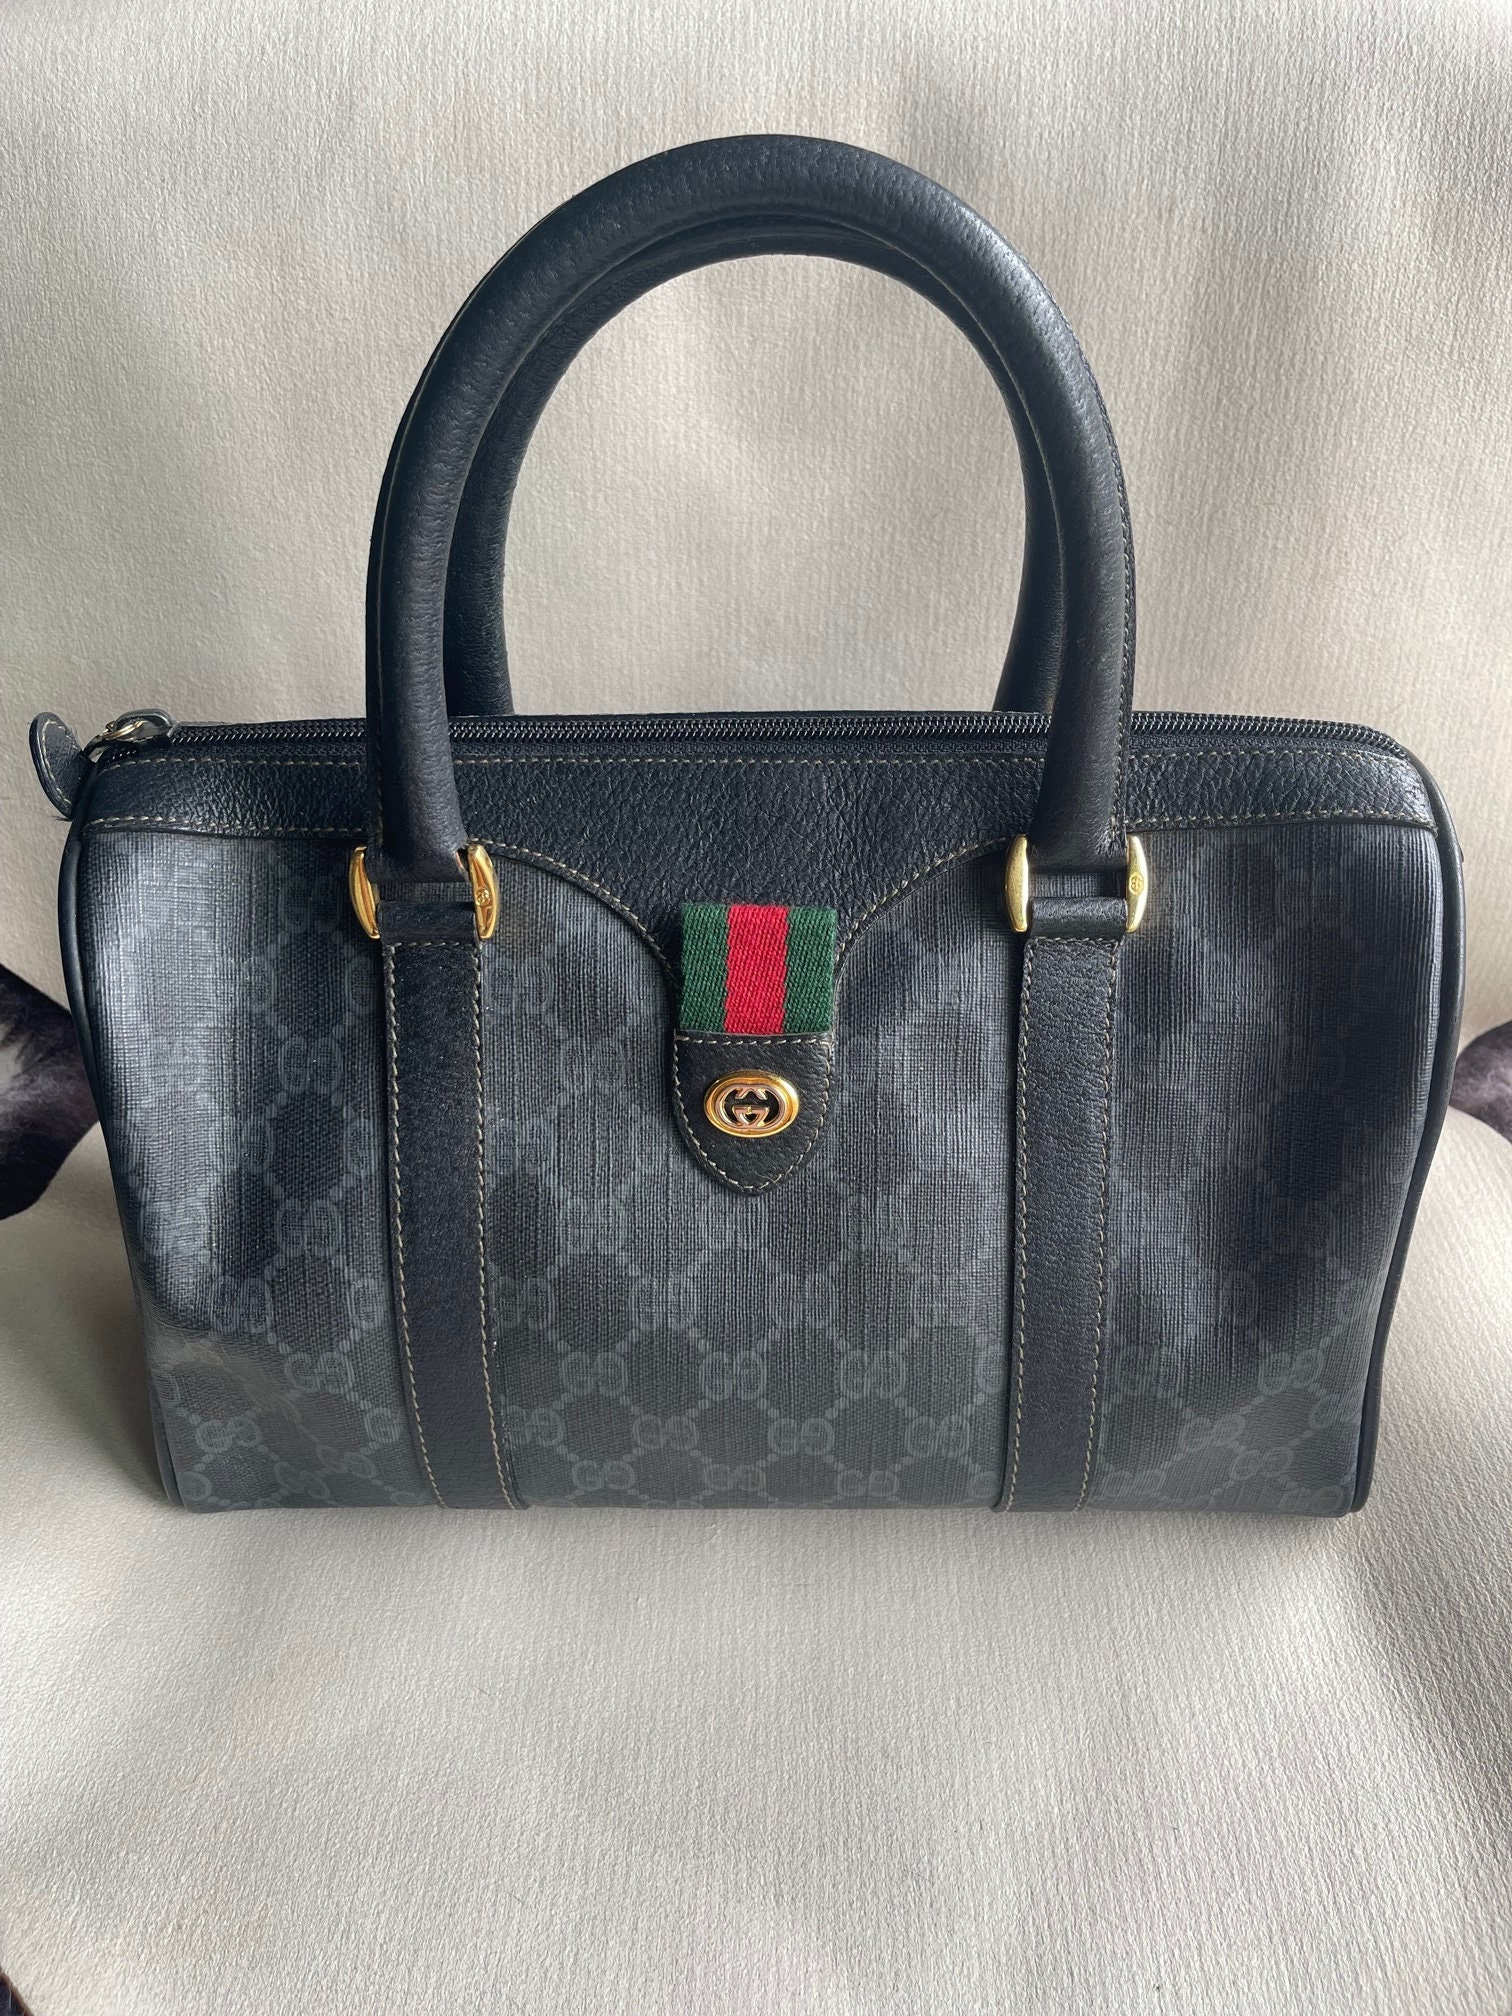 Vintage Gucci Handbag Boston Bag Shoulder Bag GG – Timeless